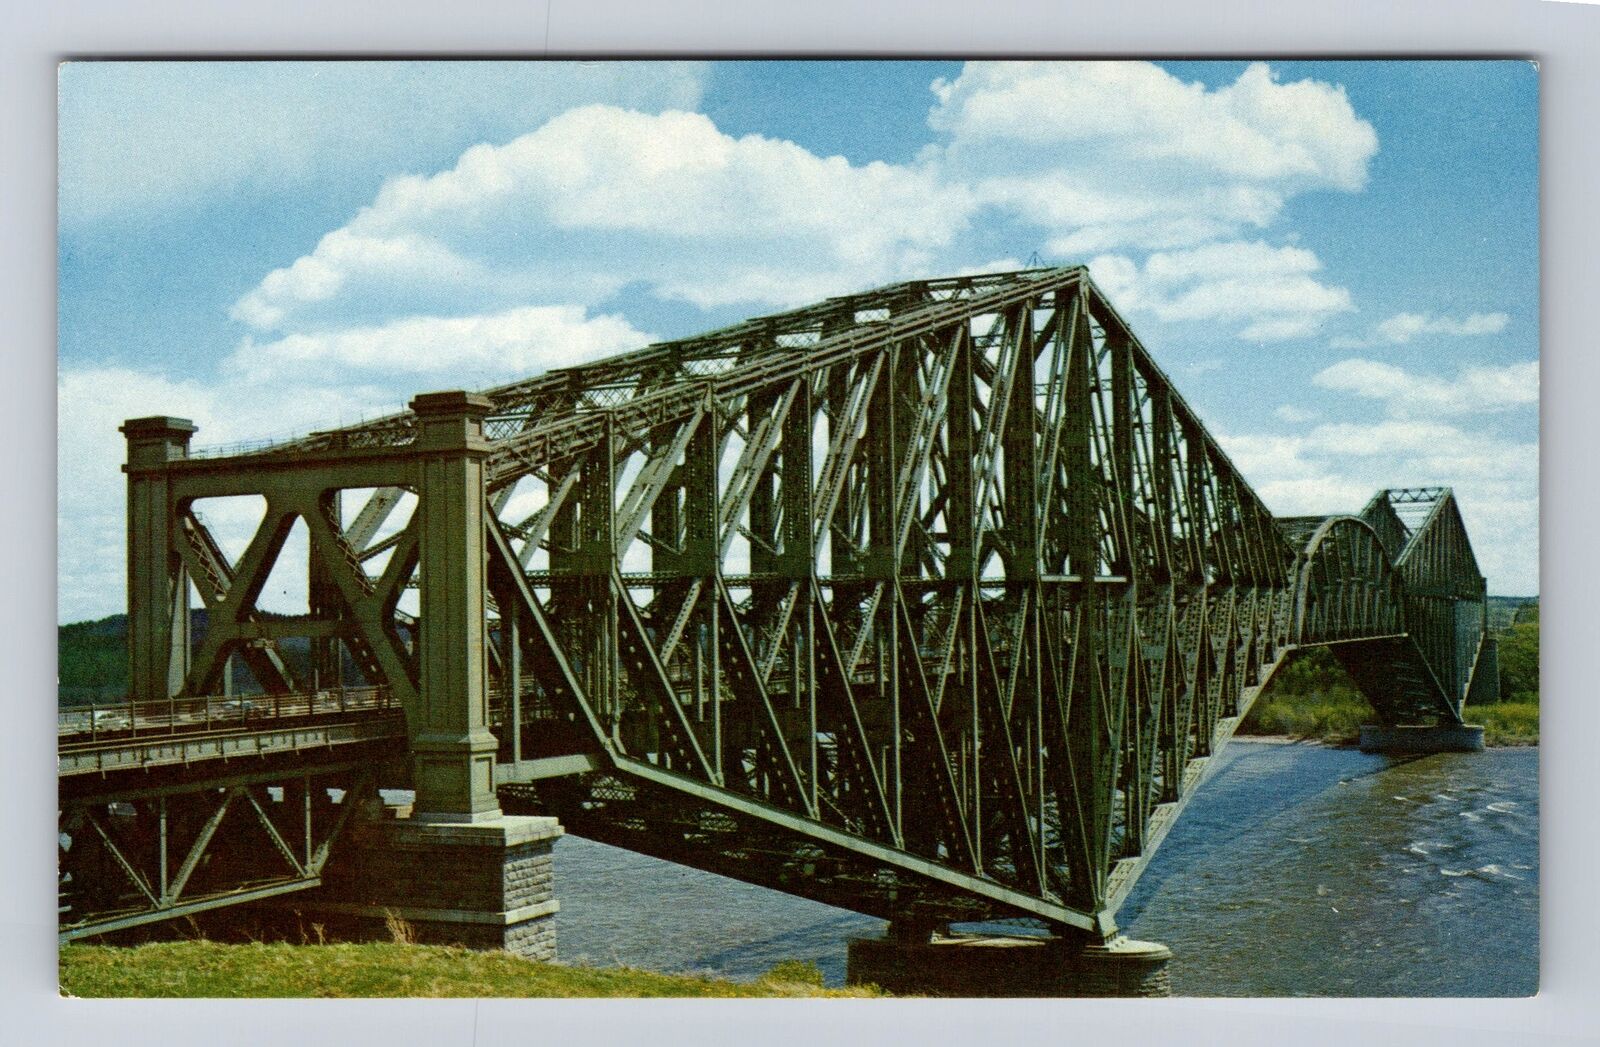 Quebec Canada, Le pont de Quebec, The Quebec Bridge, Vintage Souvenir Postcard